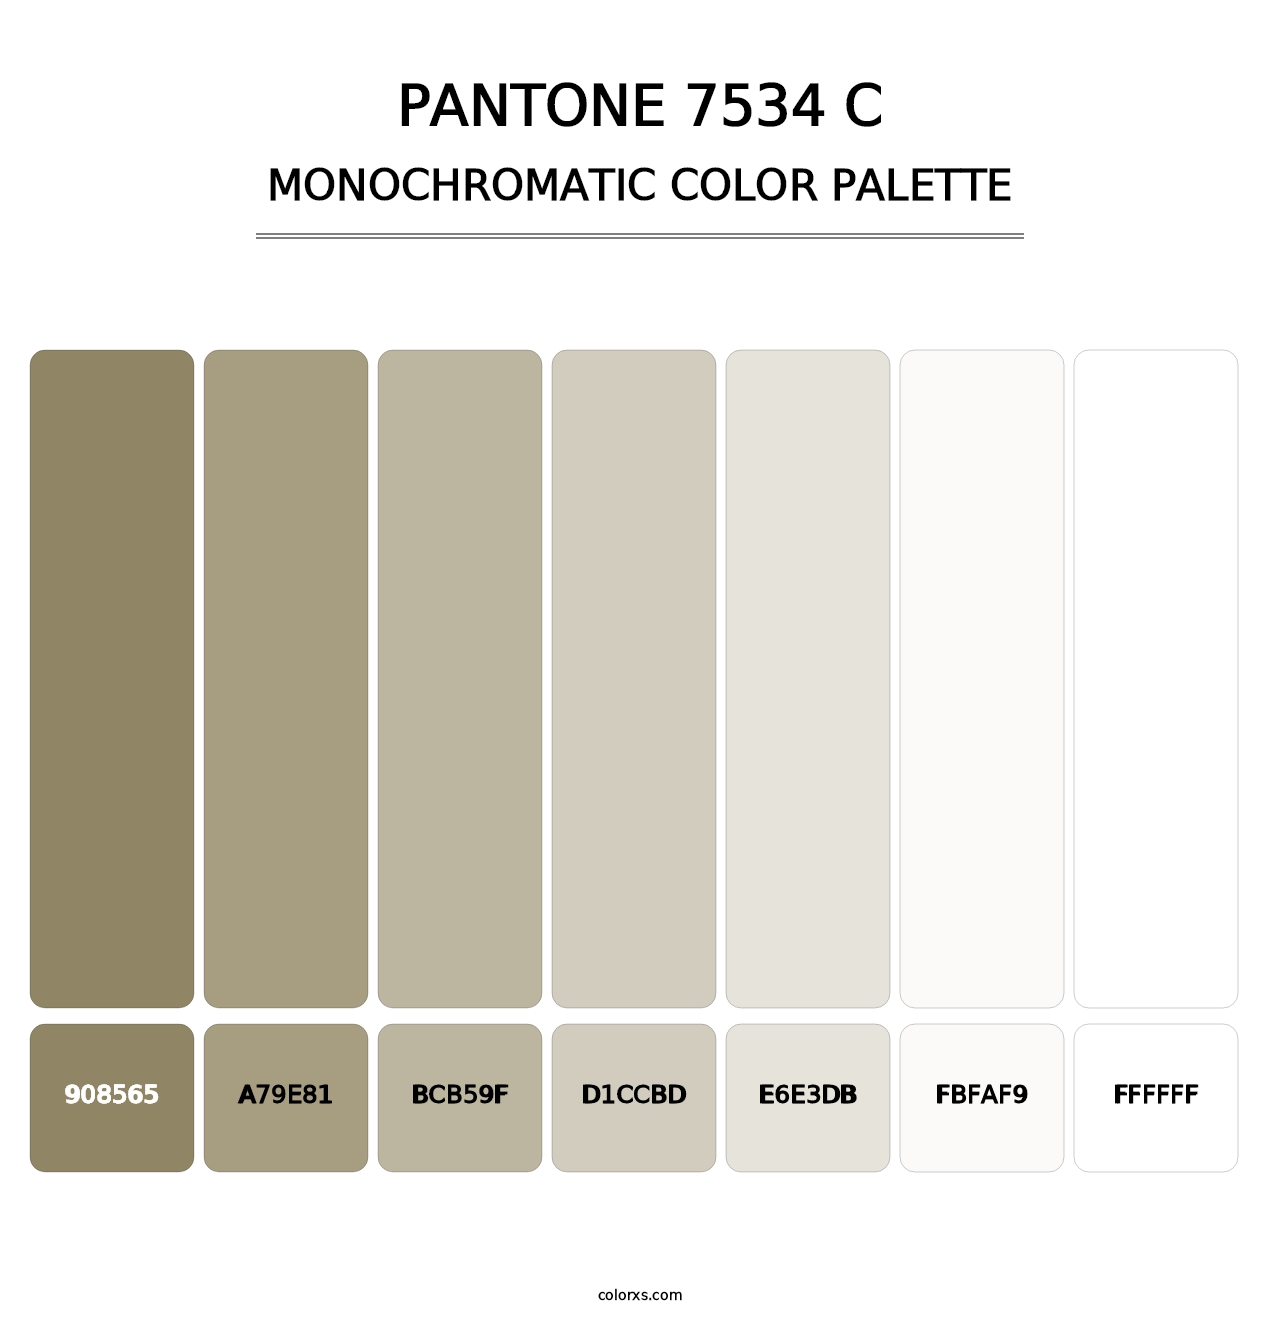 PANTONE 7534 C - Monochromatic Color Palette